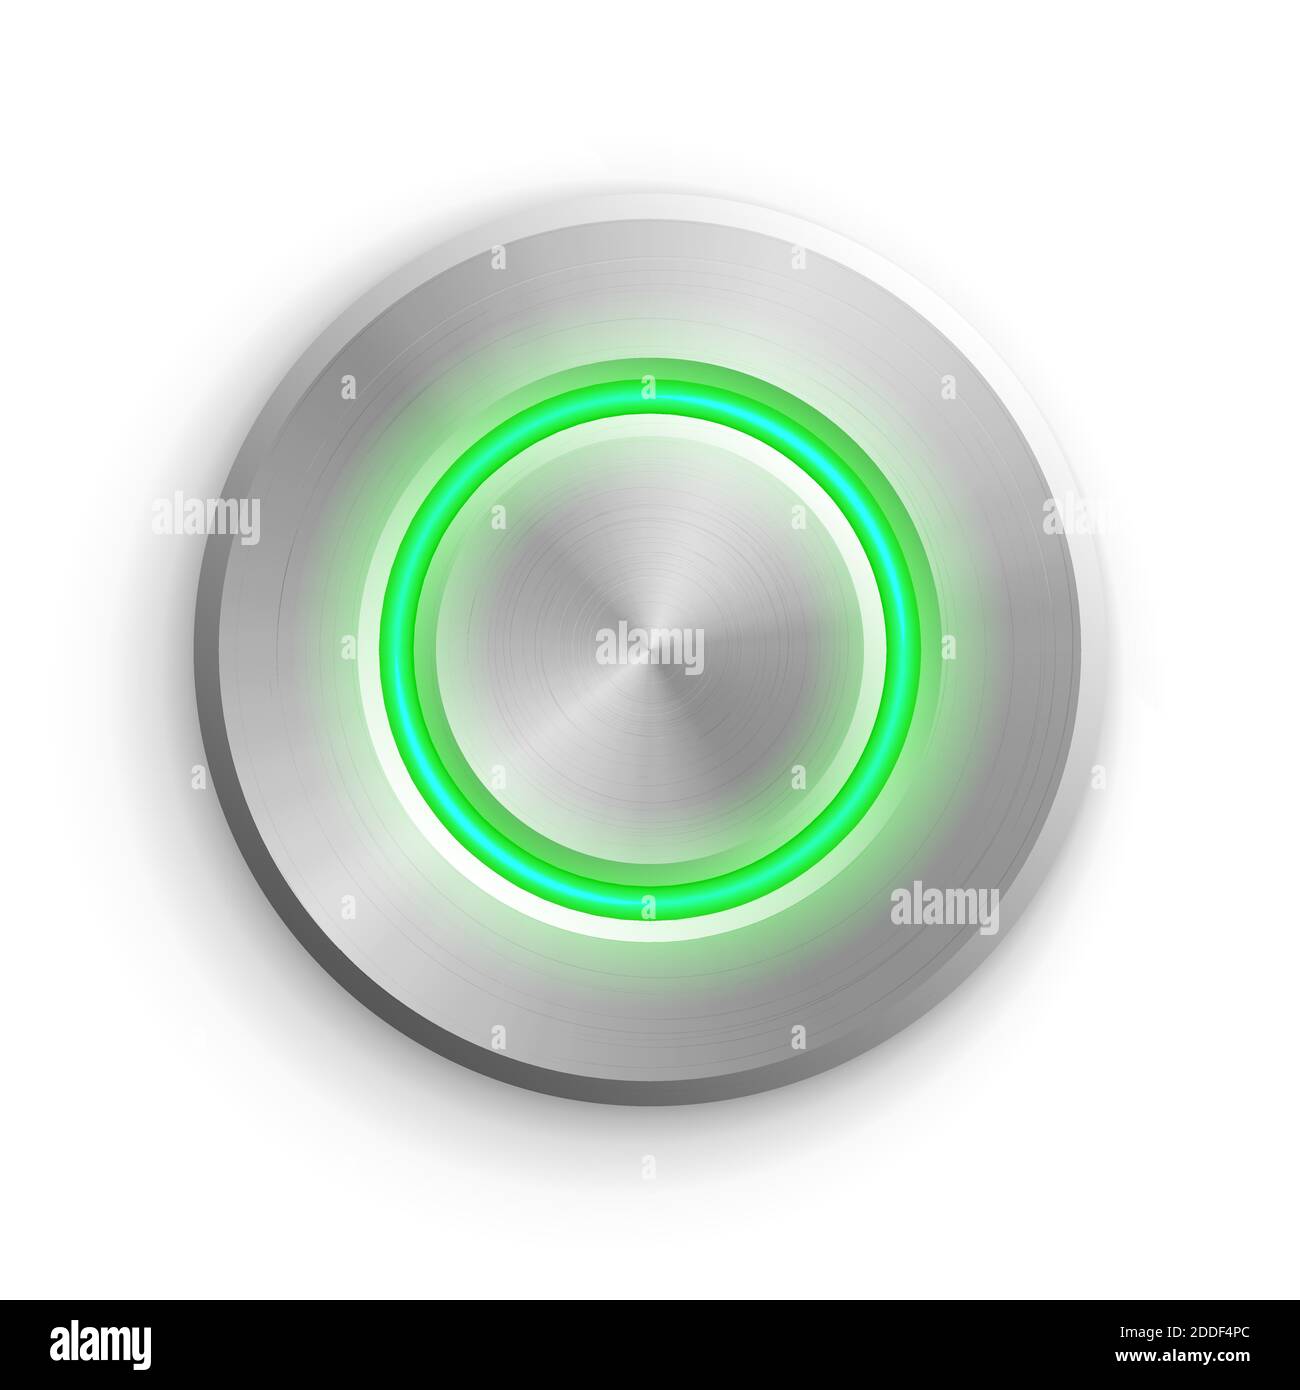 Pulsante cerchio cromato. Illustrazione vettoriale con icone 3d rotonde in metallo. Oggetto realistico circolare lucido su sfondo bianco. Elemento astratto con verde Illustrazione Vettoriale